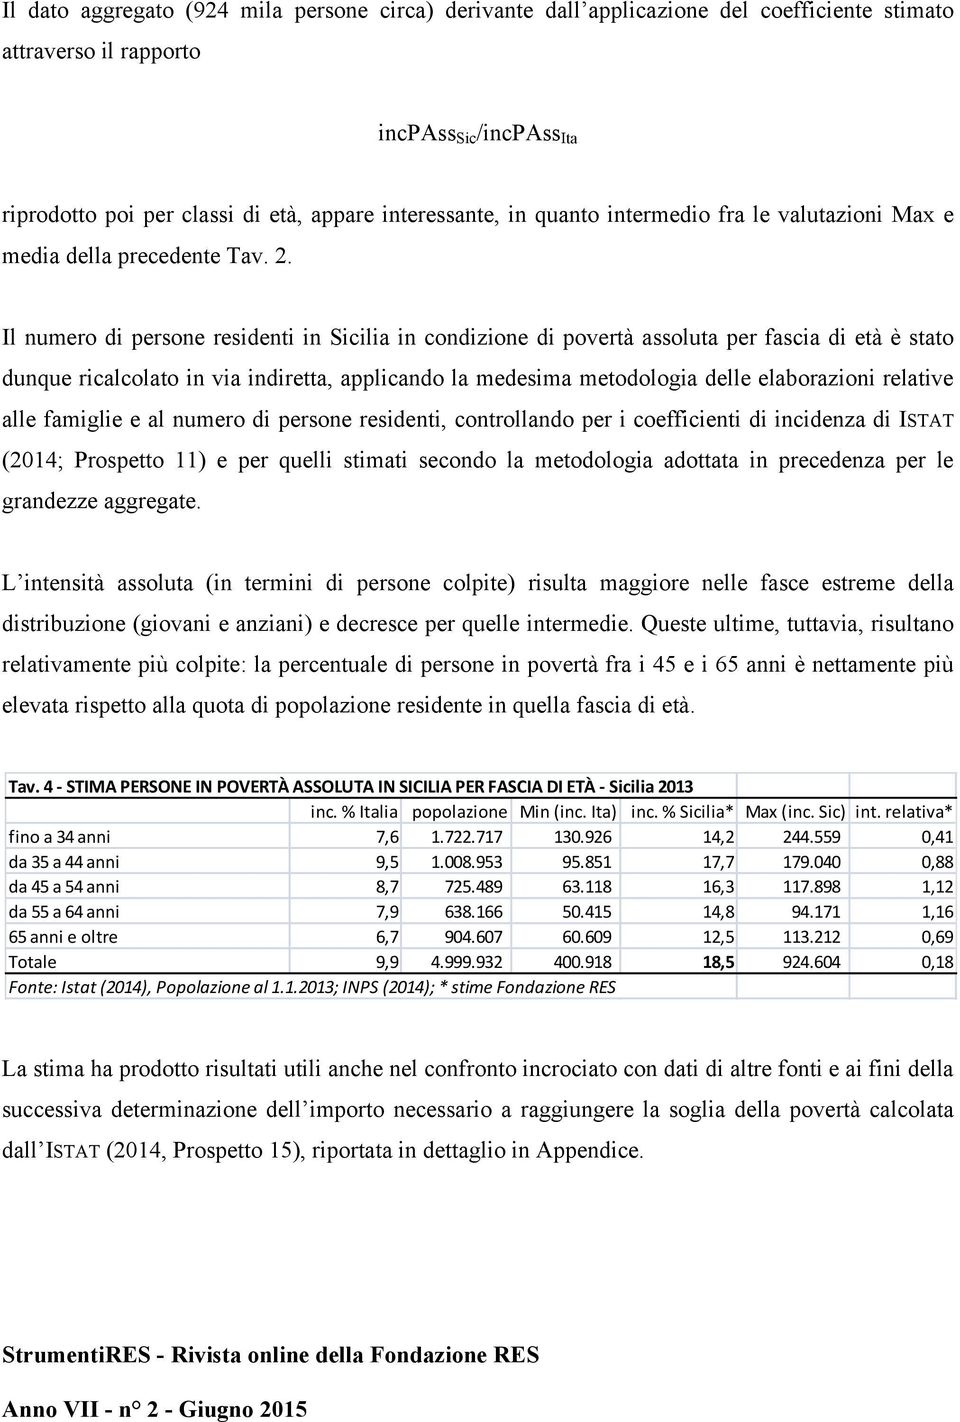 Il numero di persone residenti in Sicilia in condizione di povertà assoluta per fascia di età è stato dunque ricalcolato in via indiretta, applicando la medesima metodologia delle elaborazioni